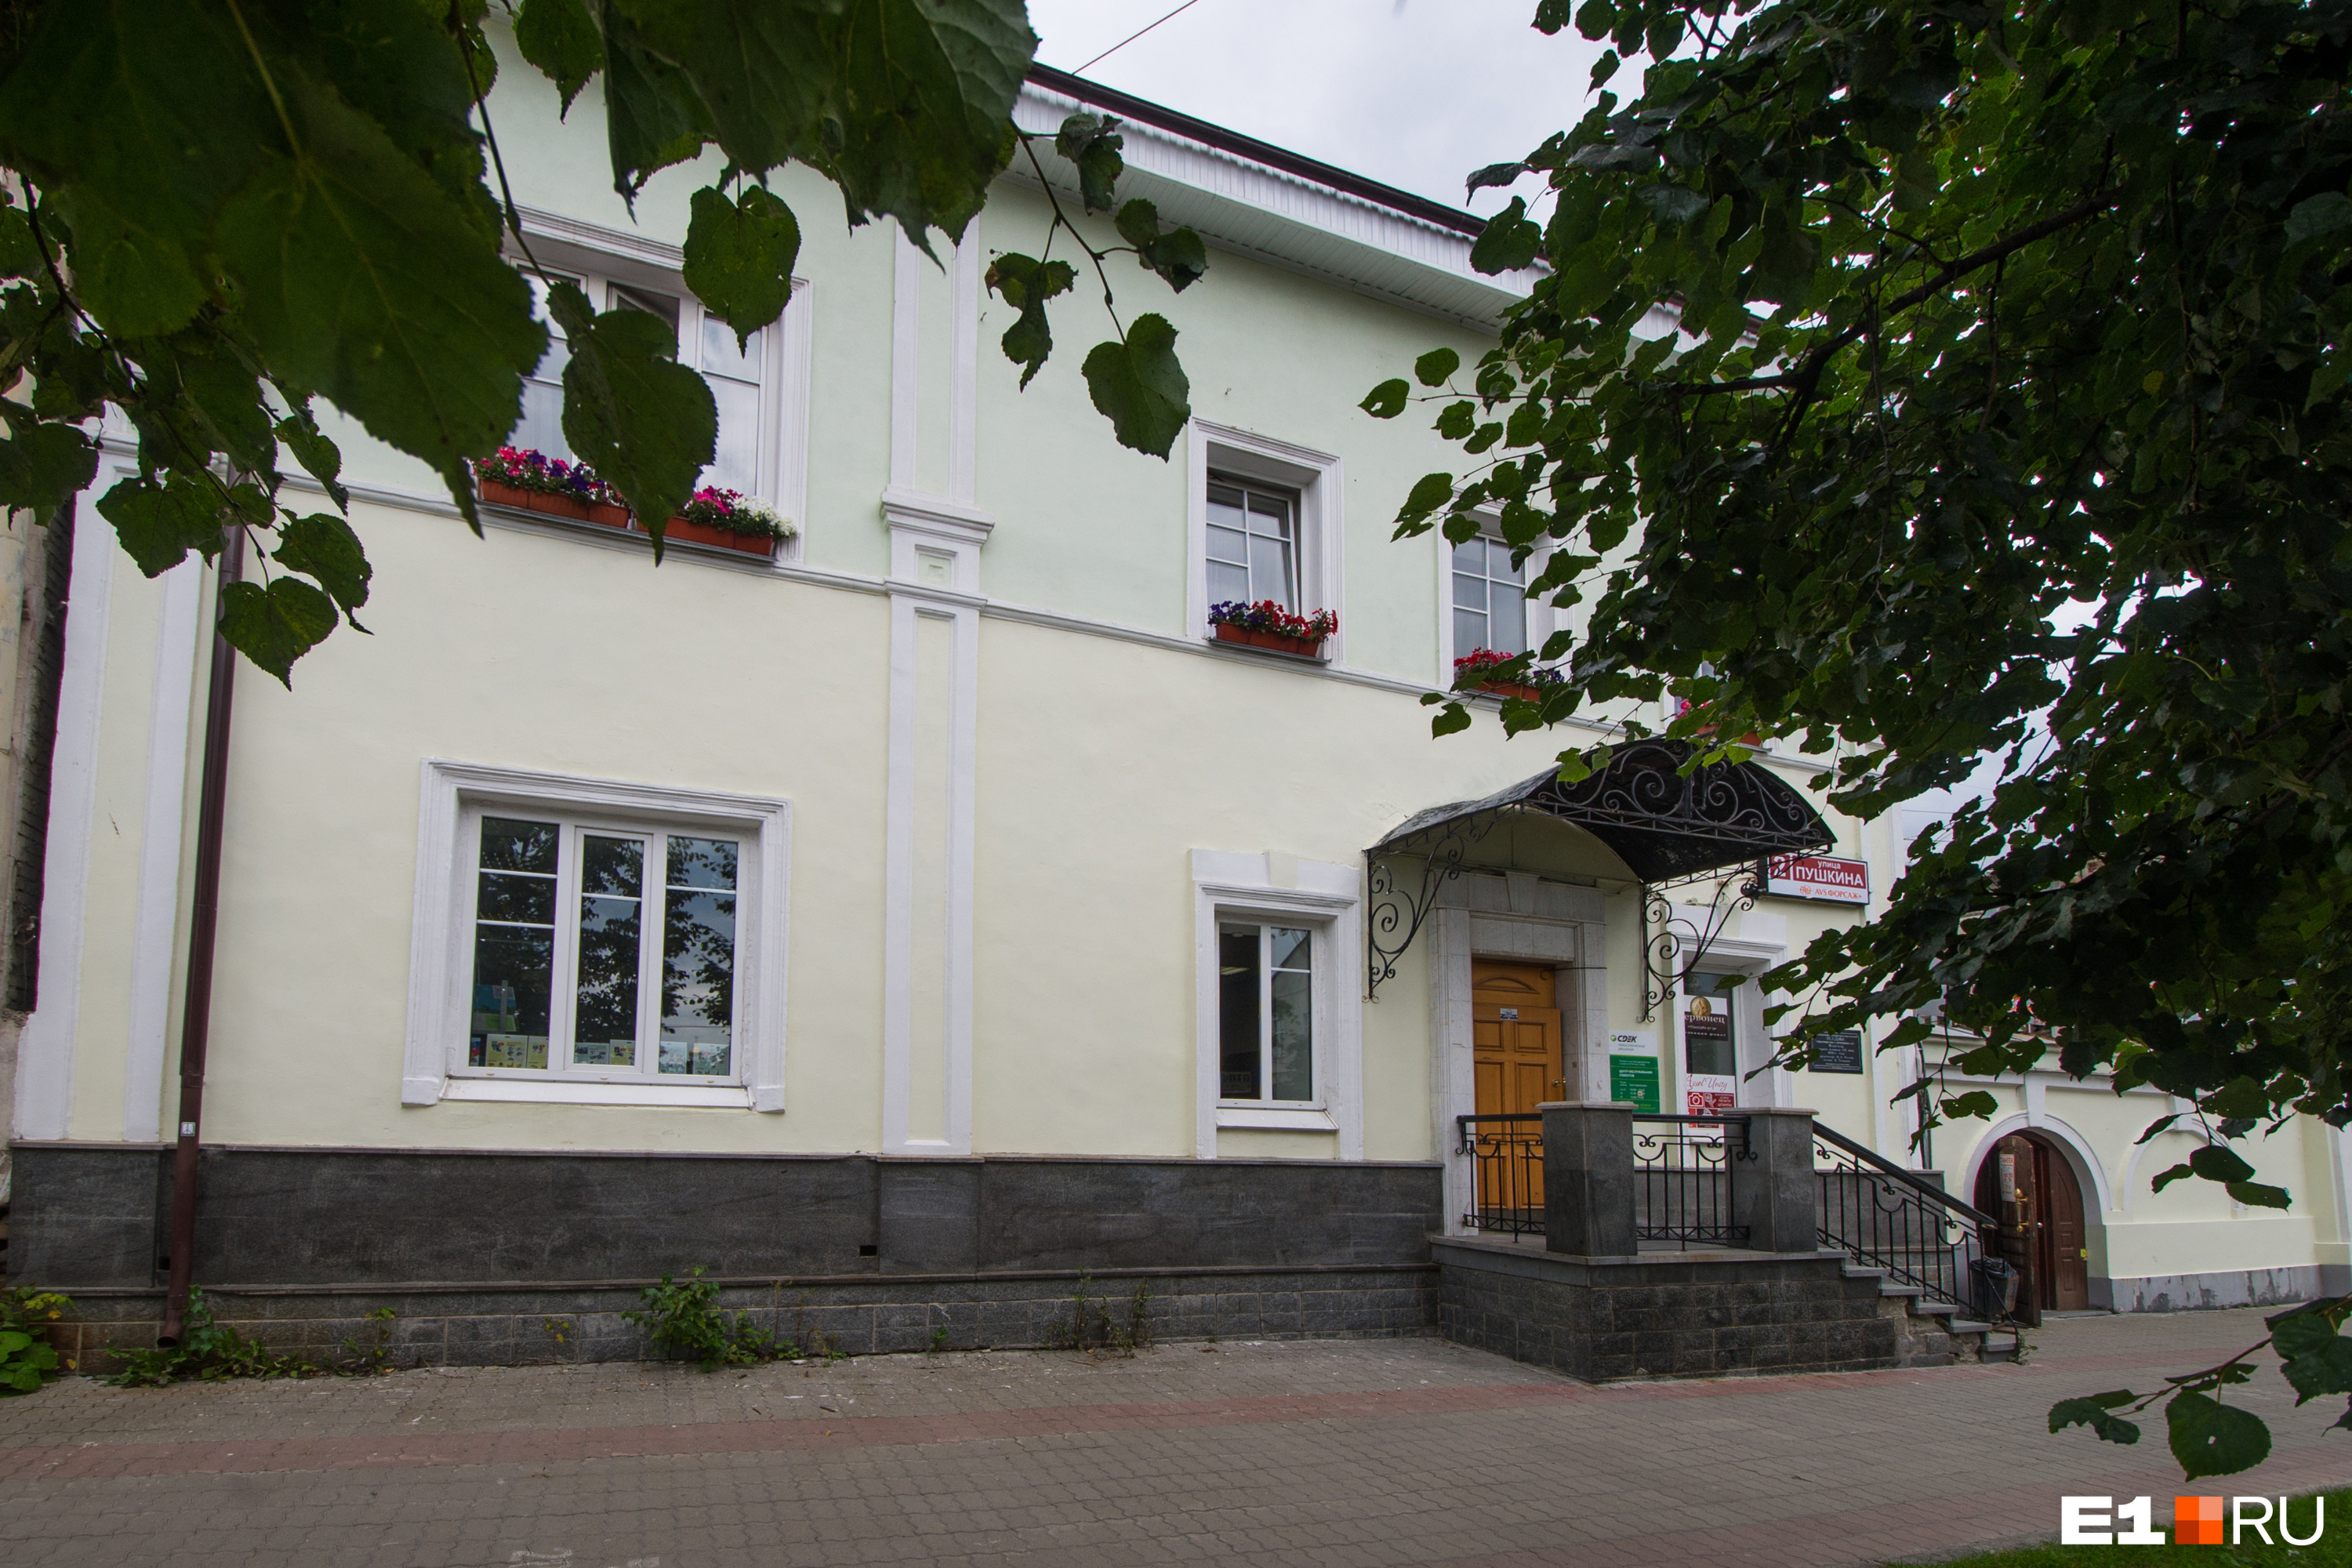 В центре Екатеринбурга решили продать хостел в здании старинной усадьбы